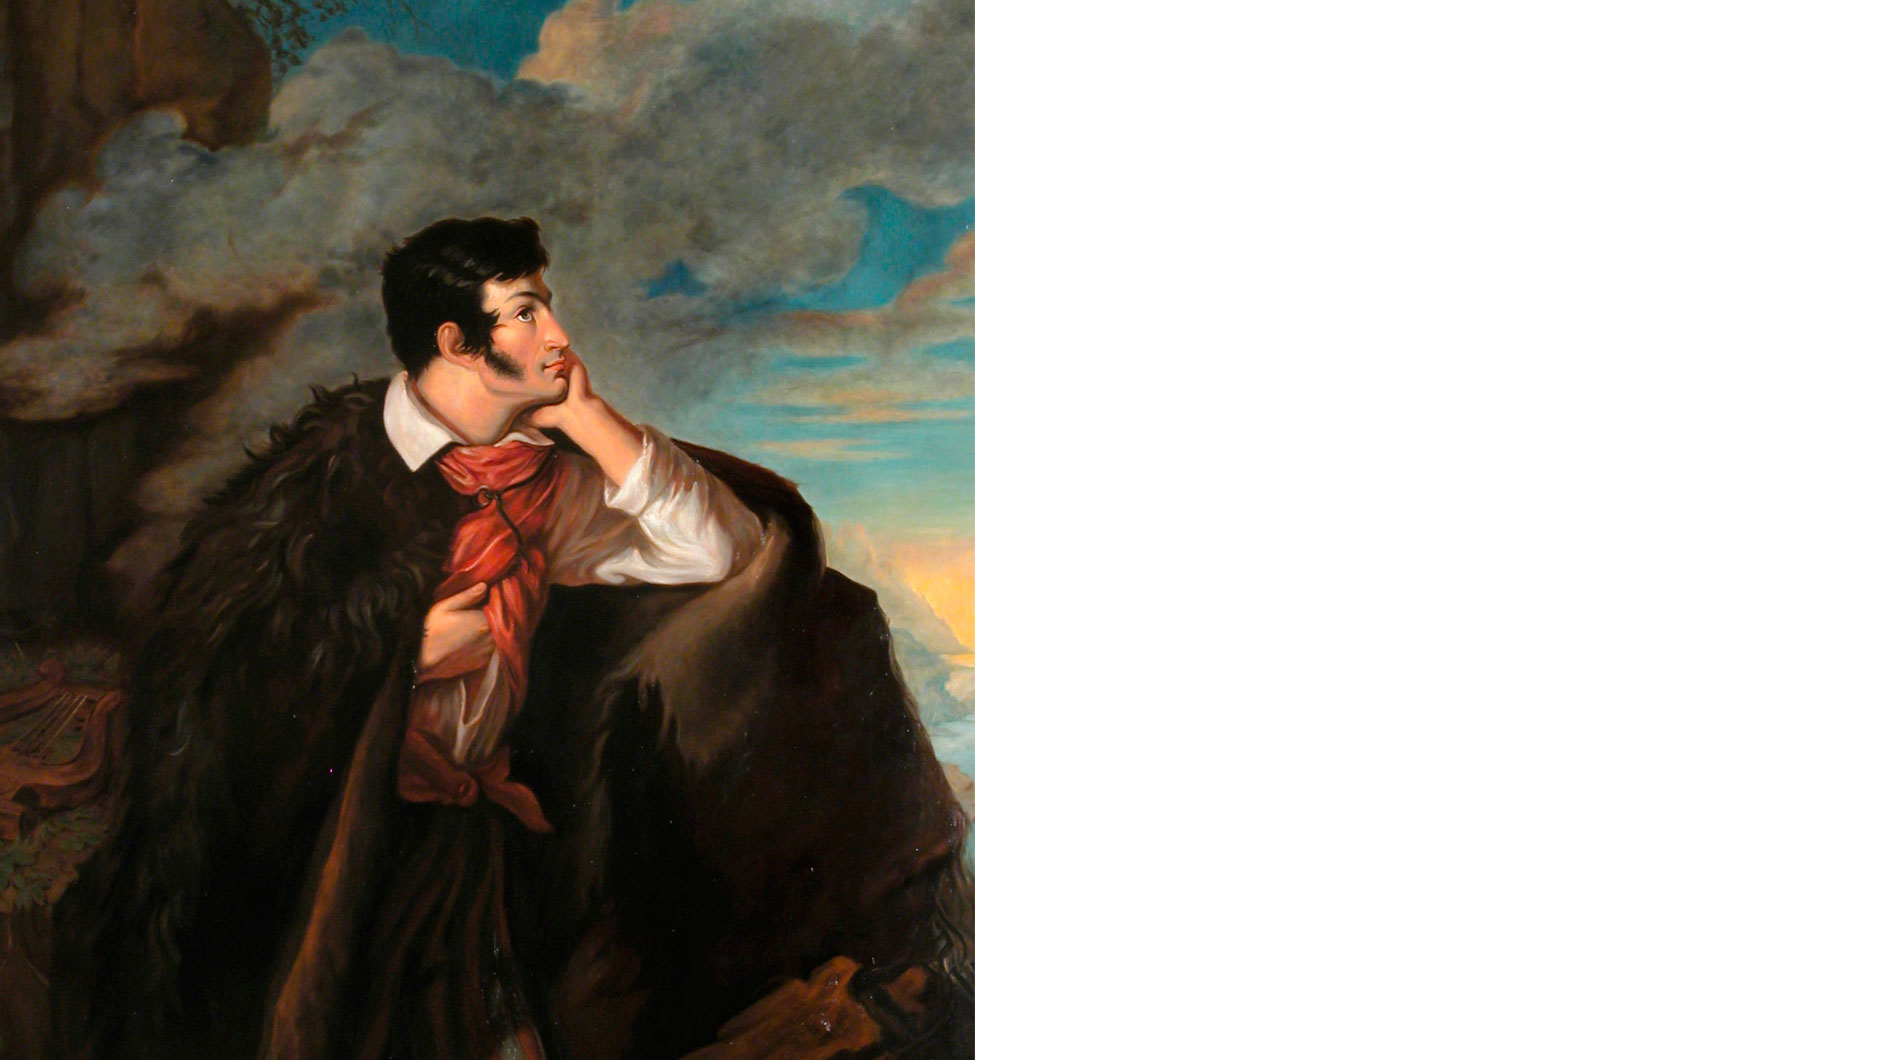 Этот известный портрет Адама Мицкевича создал белорусский художник Валентий Ванькович, его друг. Поэт изображен в кавказской бурке на скале Аю-Даг в Крыму. Он путешествовал туда по морю во время своей высылки в Одессу в 1825 году